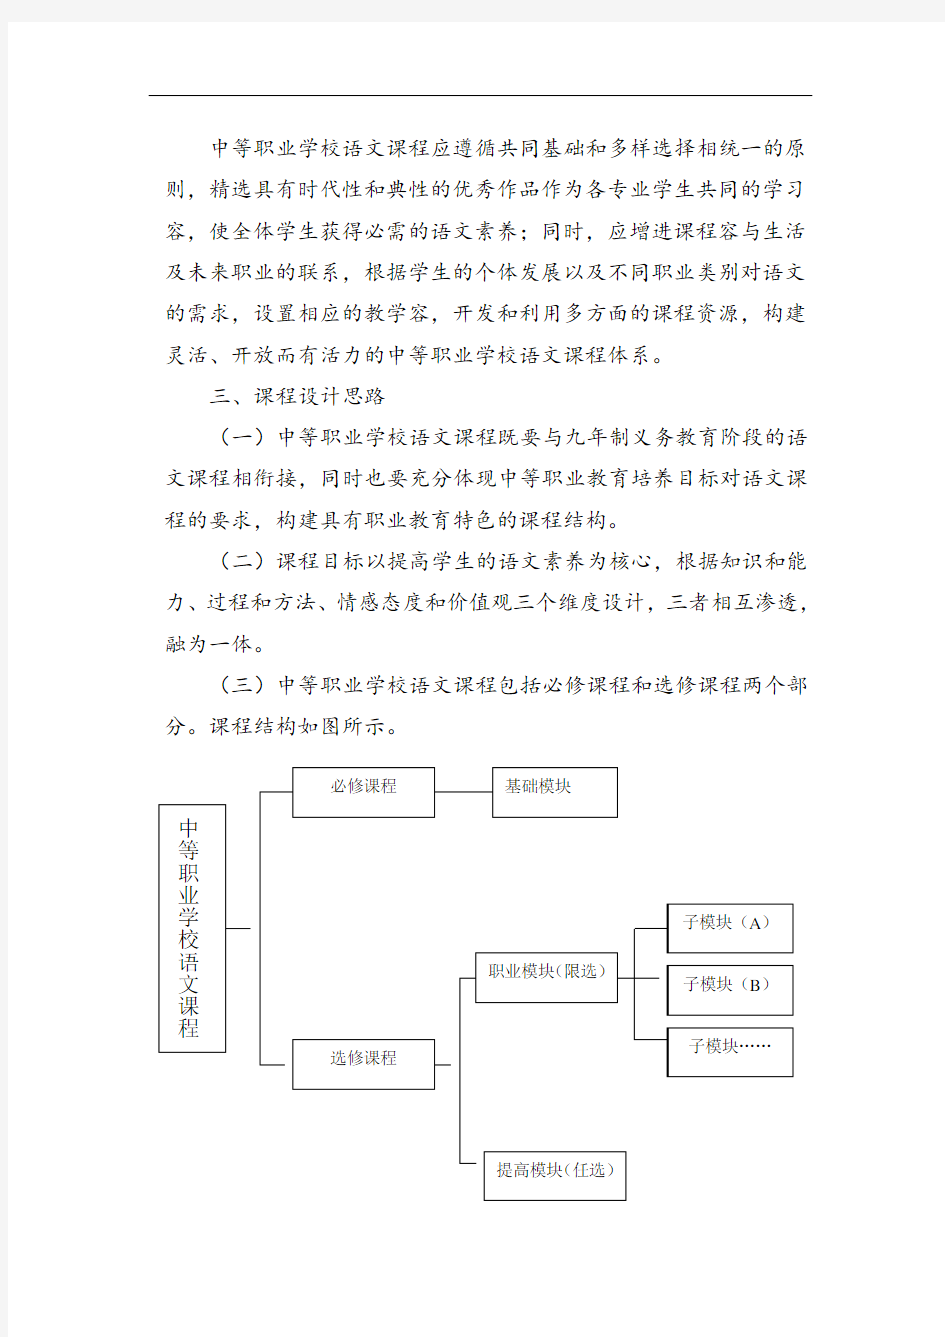 江苏省中等职业学校语文课程实用标准化(080813南京)